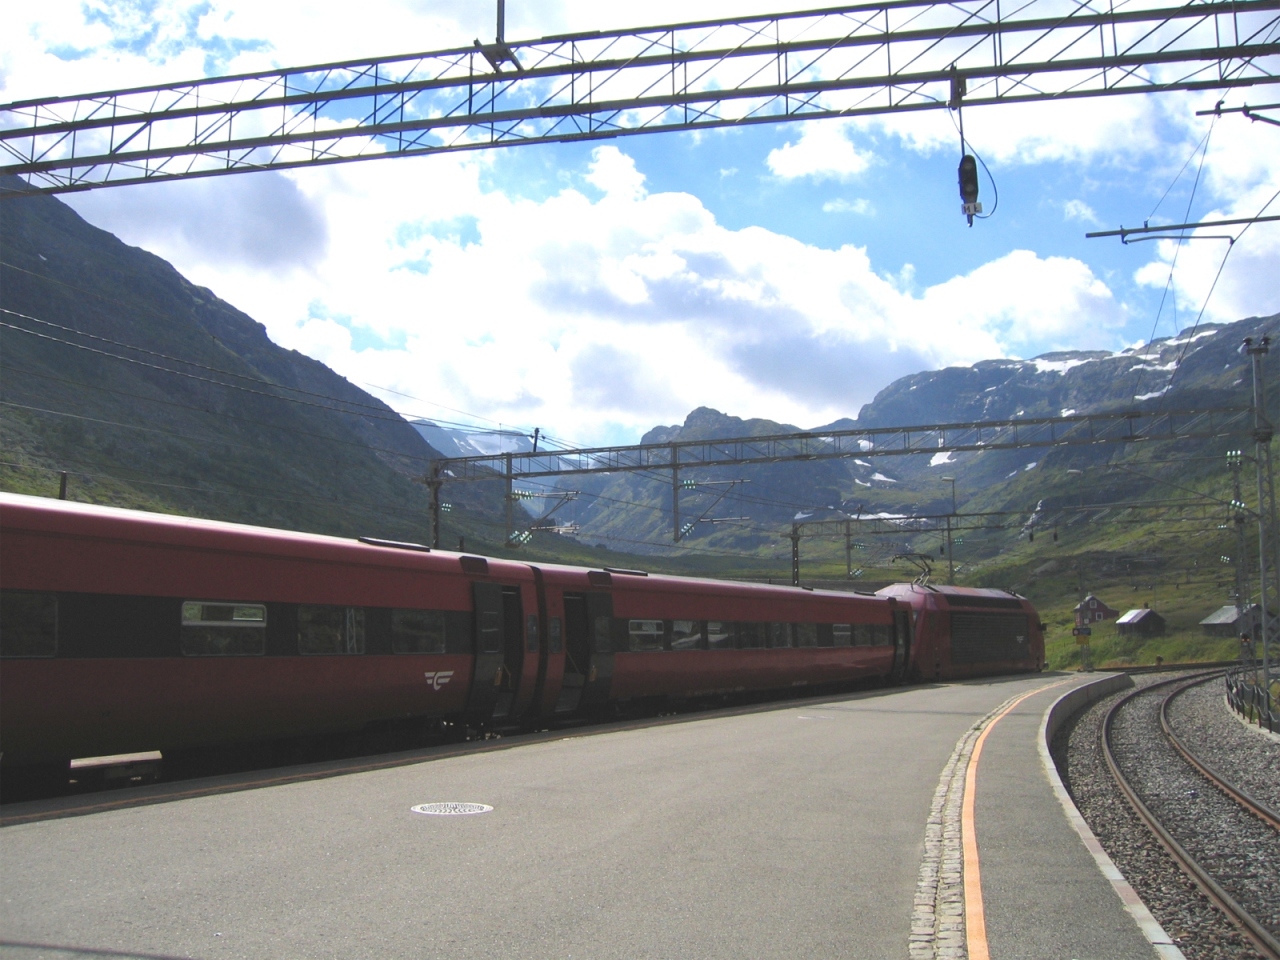 『オスロからミルダールまでのベルゲン鉄道 The Bergen Railway (Bergensbanen) from Oslo to